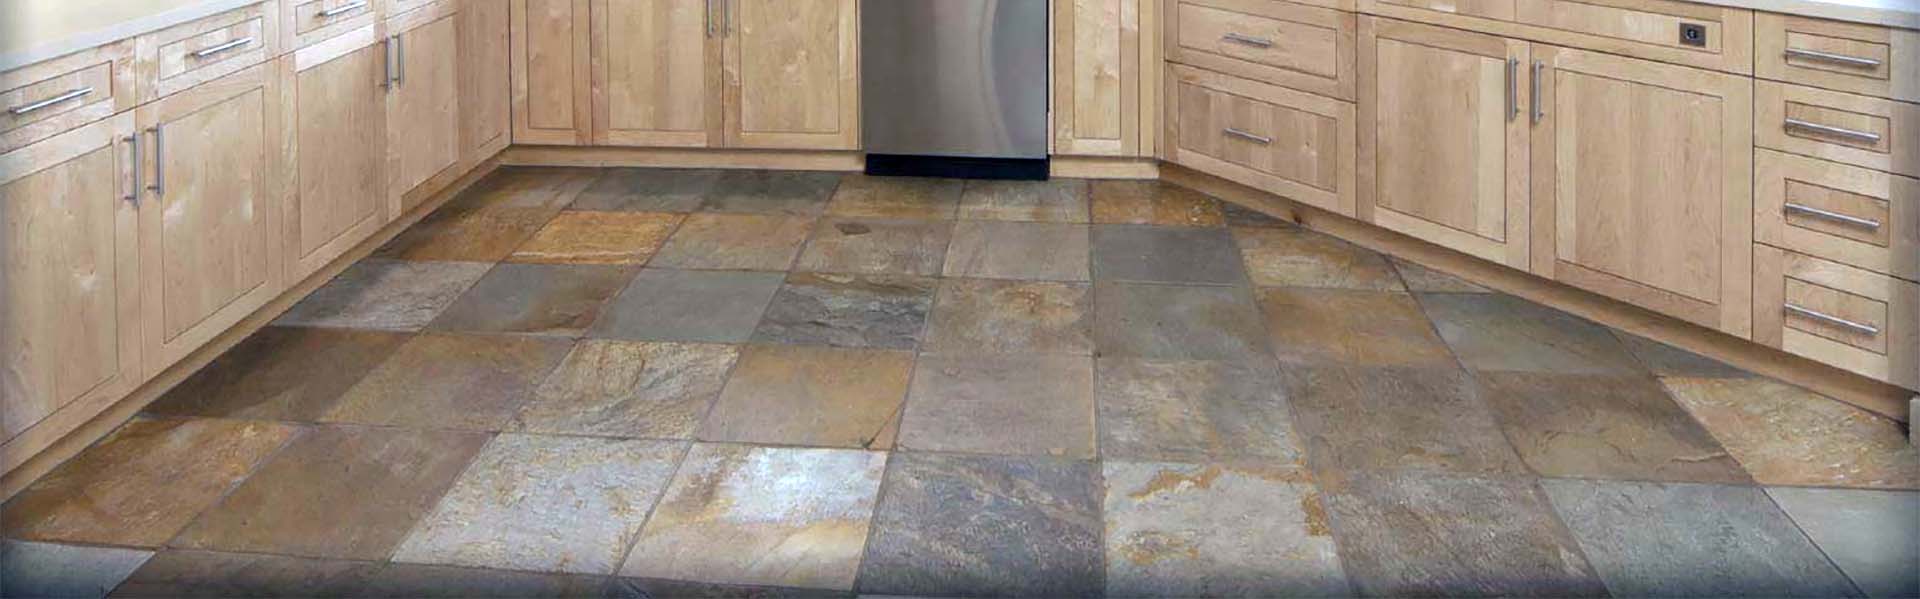 indoor kitchen floor tile